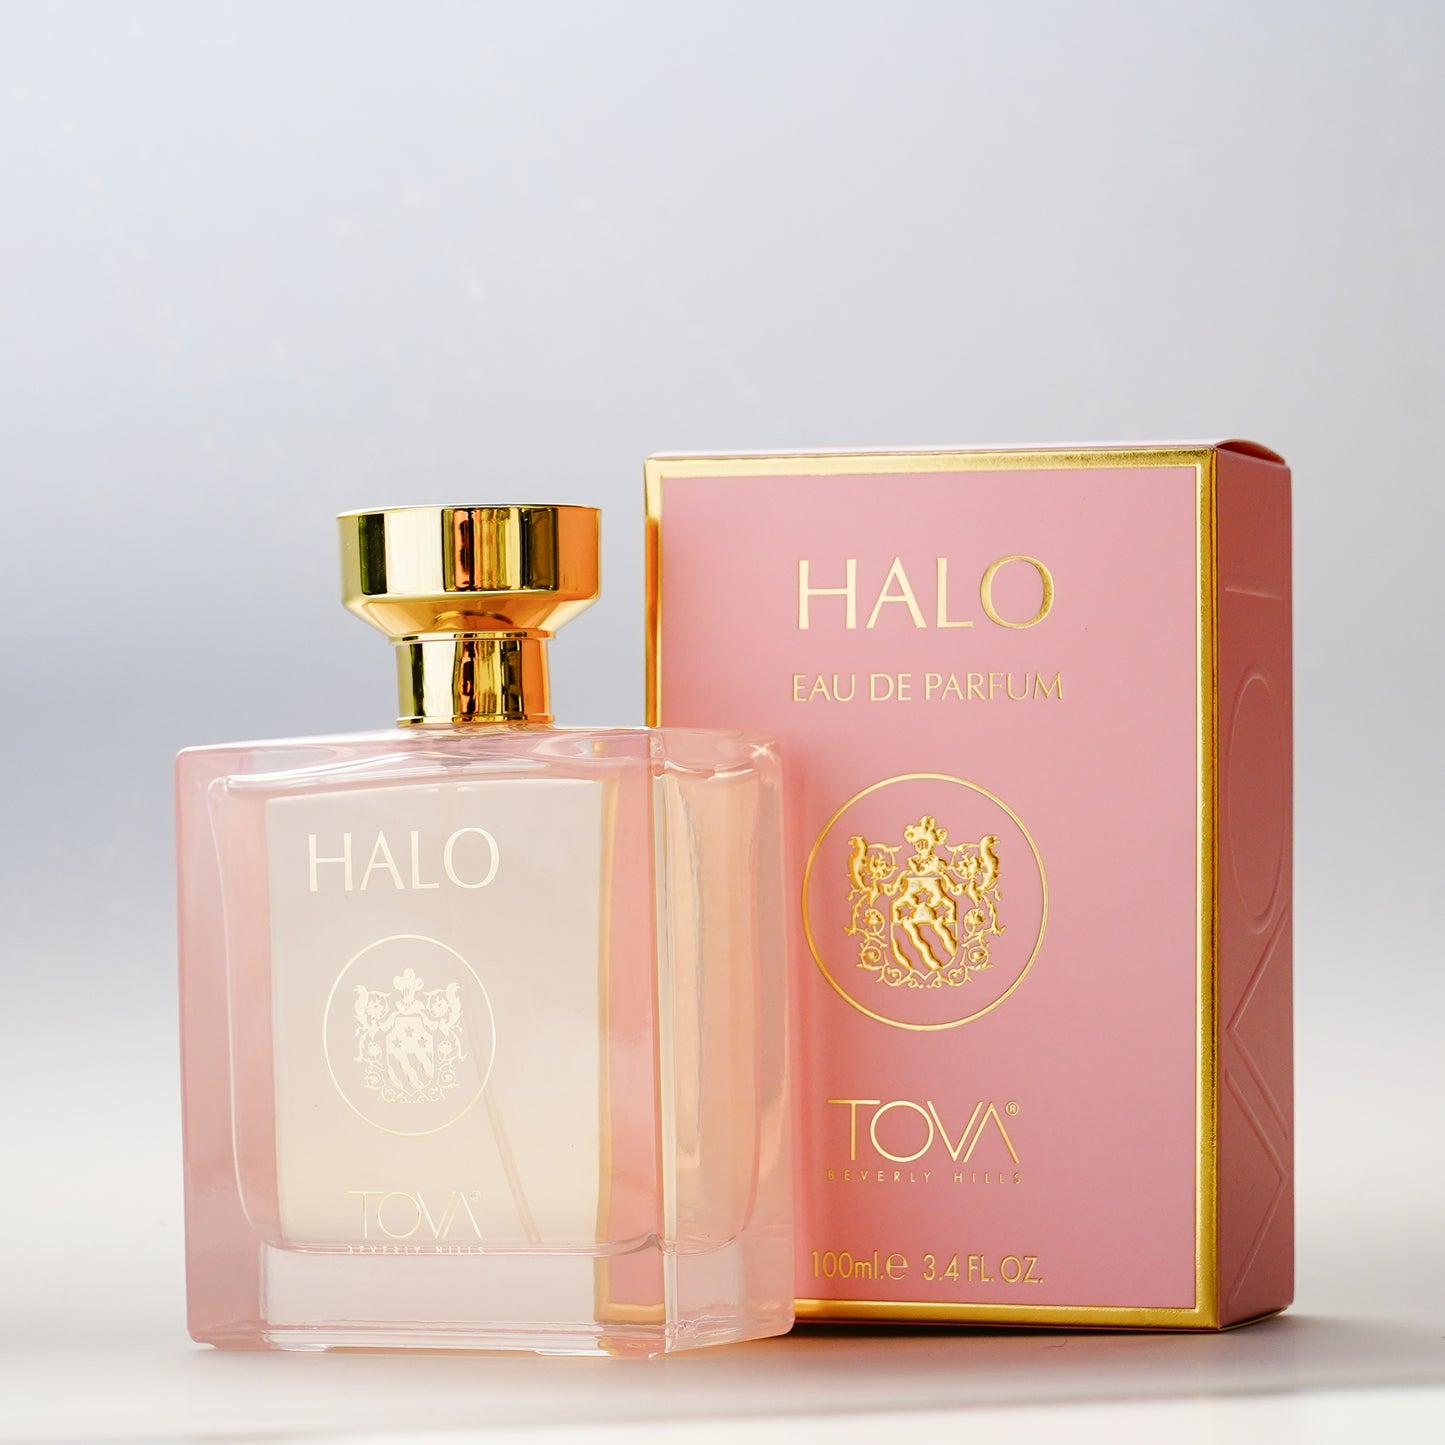 Halo Eau de Parfum 3.4 fl oz